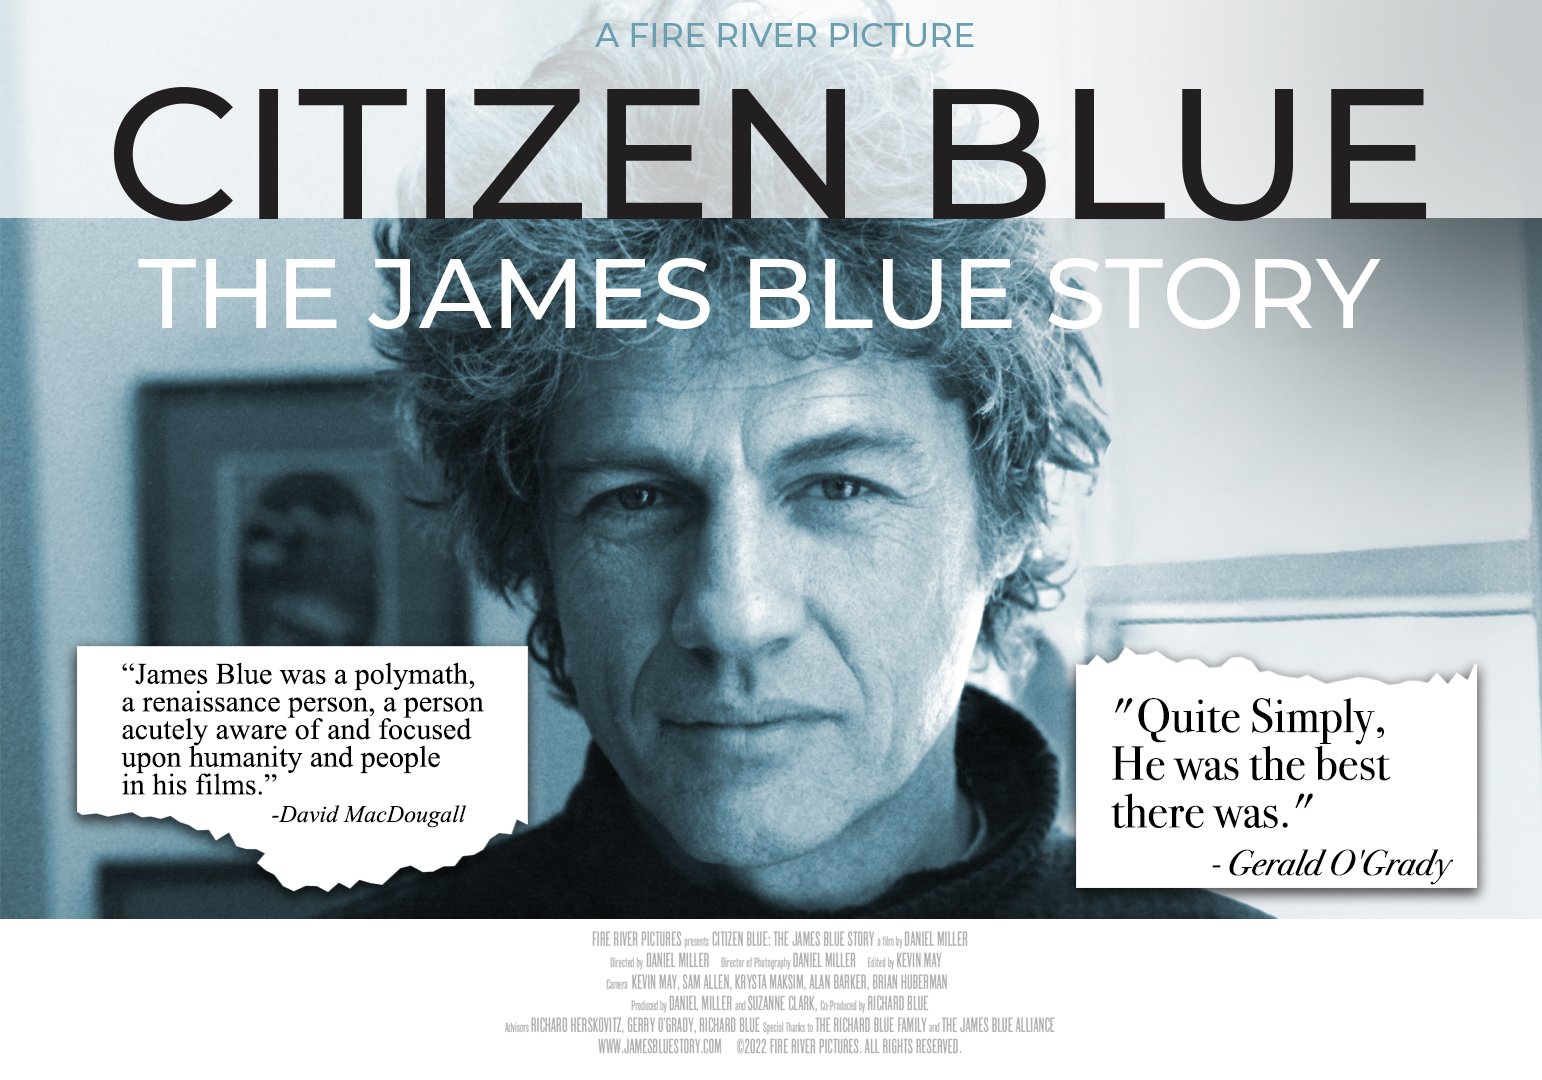 CITIZEN BLUE: THE JAMES BLUE STORY